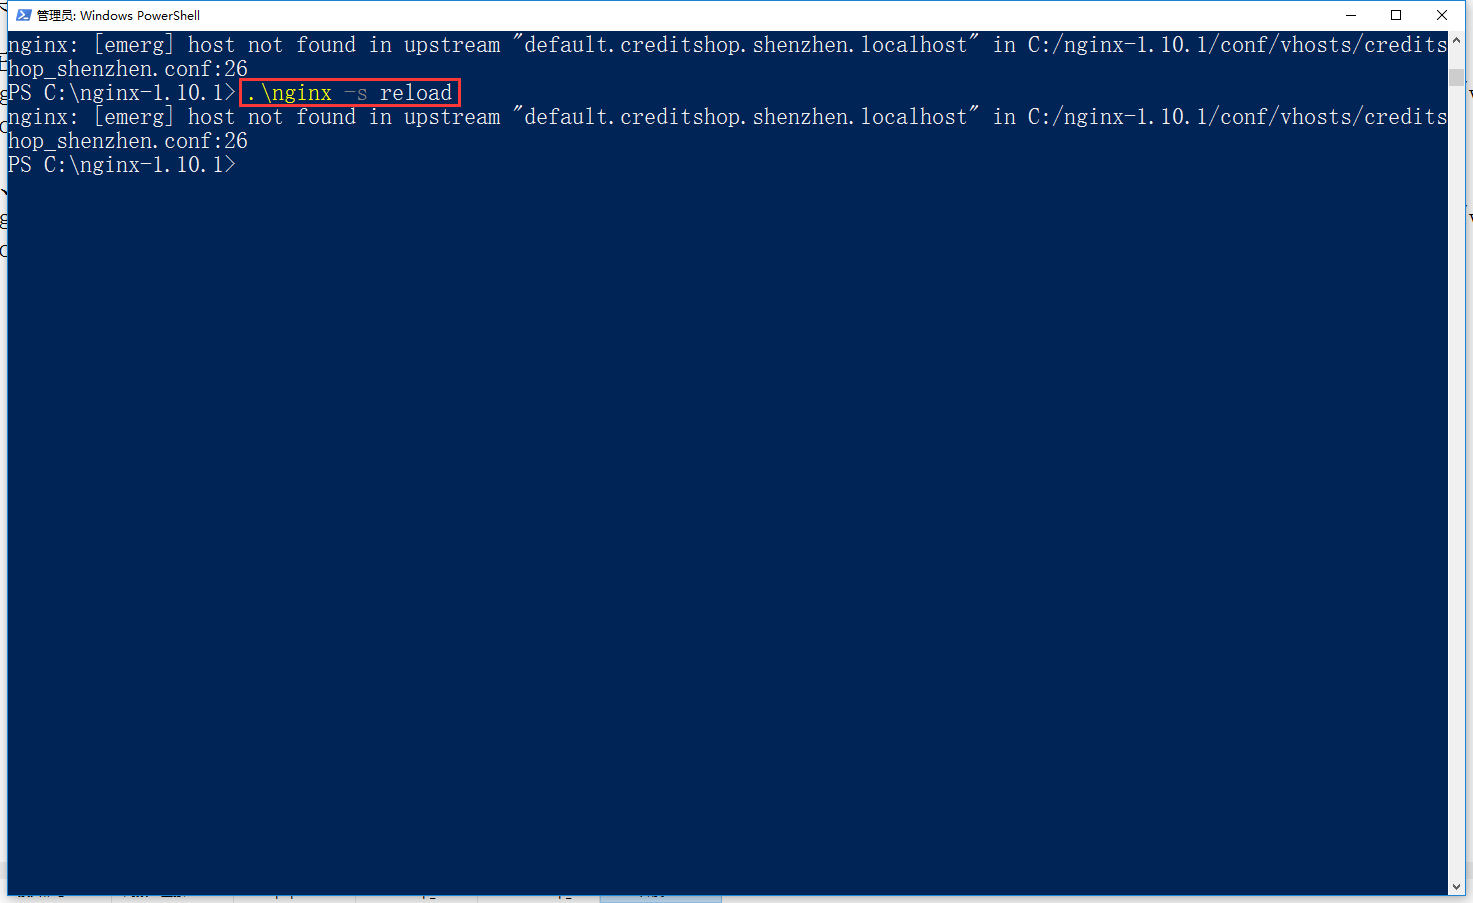 在 Windows 10、Nginx 1.10.1 下，执行命令：nginx -s reload，重新加载 Nginx 配置，报错： nginx: [emerg] host not found in upstream "default.creditshop.shenzhen.localhost" in C:/nginx-1.10.1/conf/vhosts/credits hop_shenzhen.conf:26